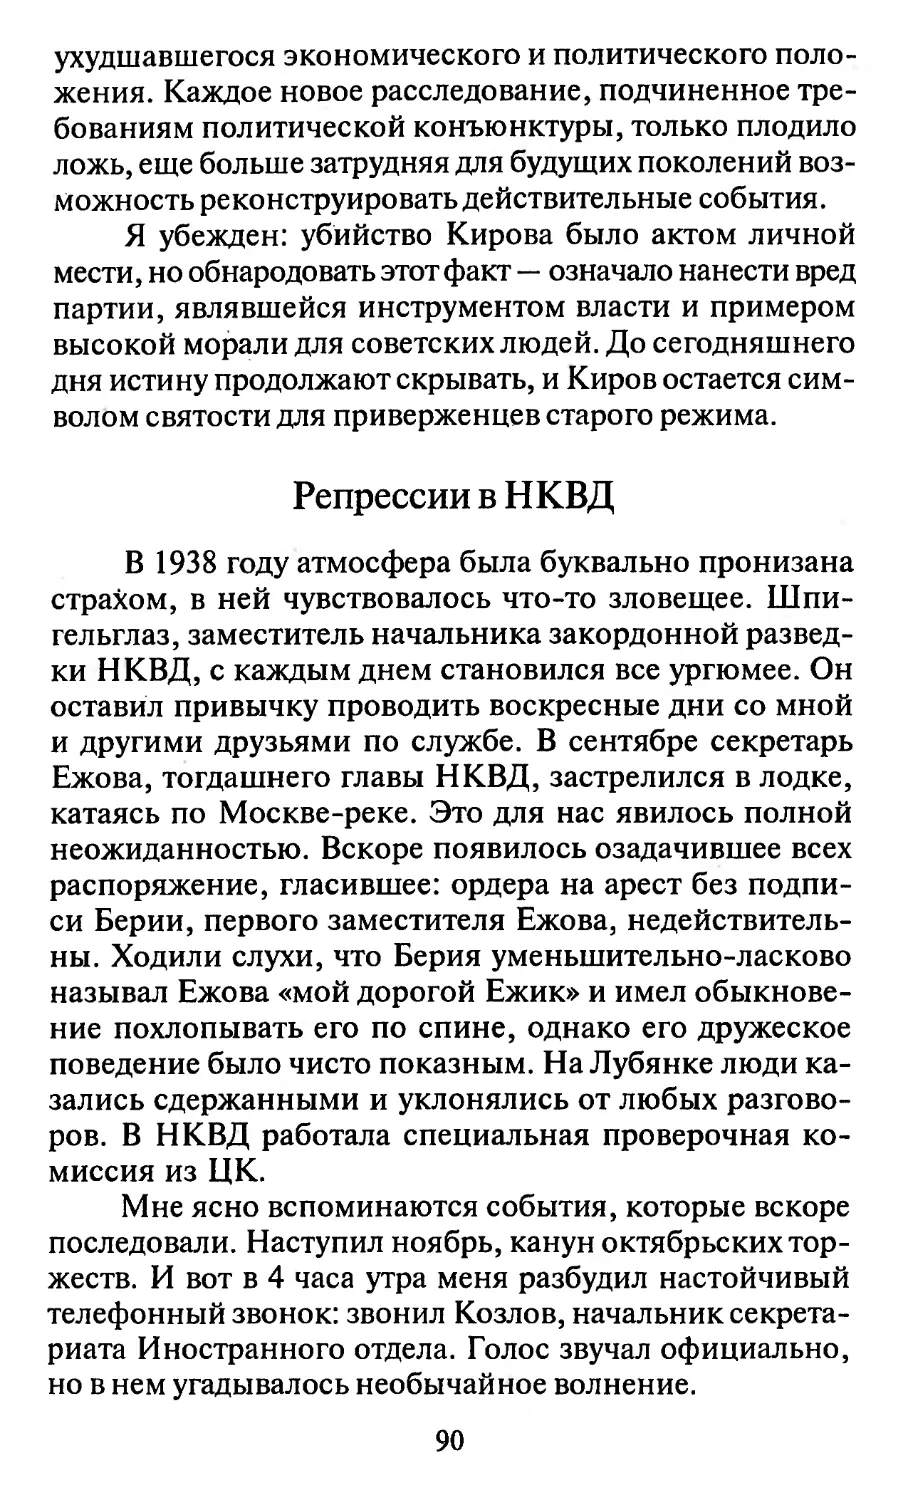 Репрессии в НКВД